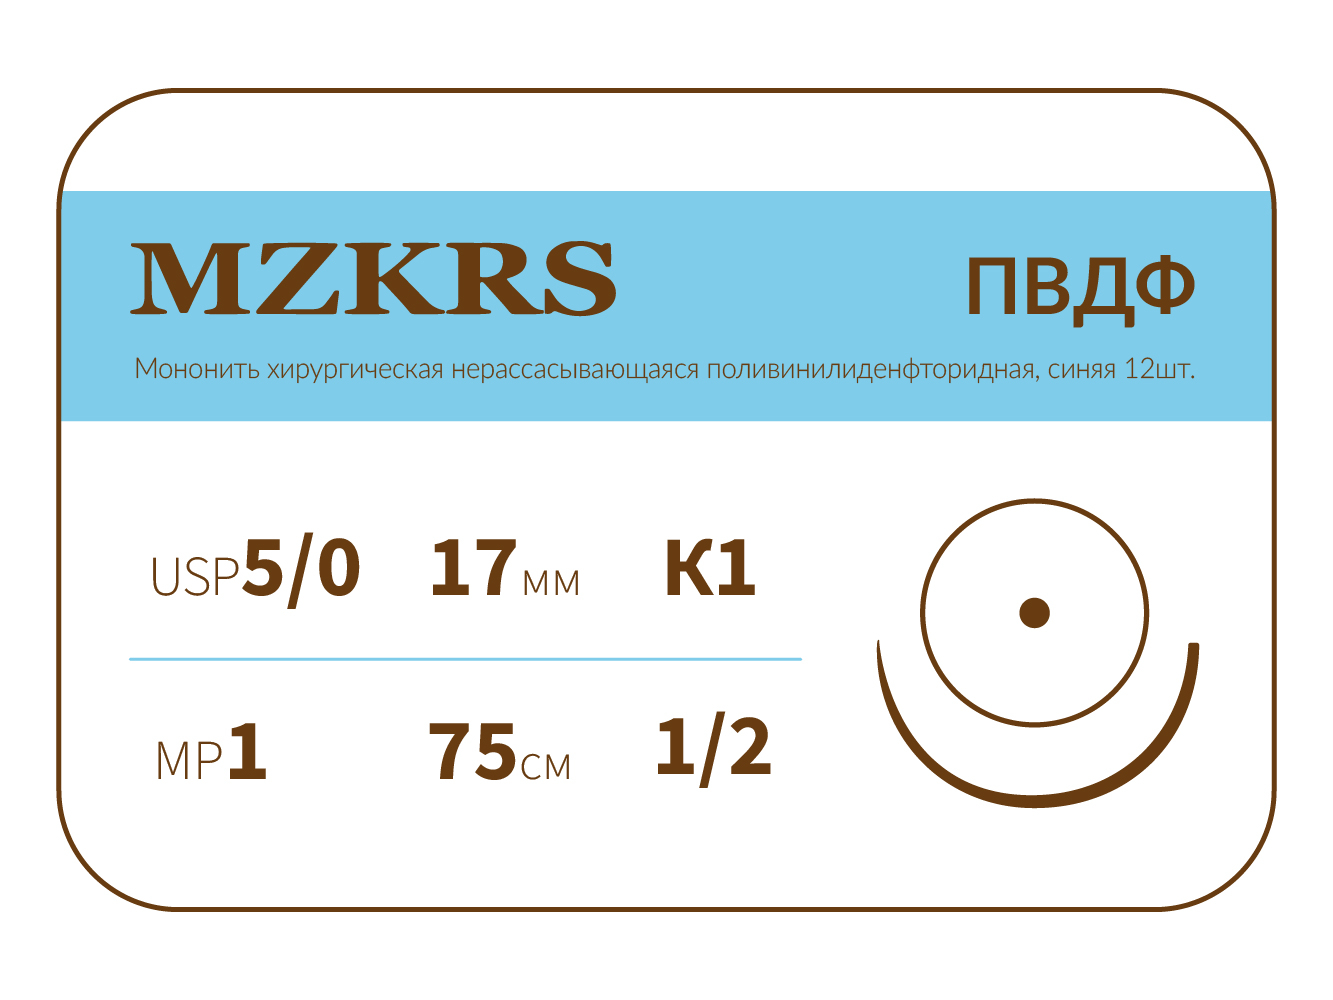 1712К1-Premium-5/0 (1)75 ПВДФ хирургическая нить поливинилиденфторидная, MZKRS (Россия)